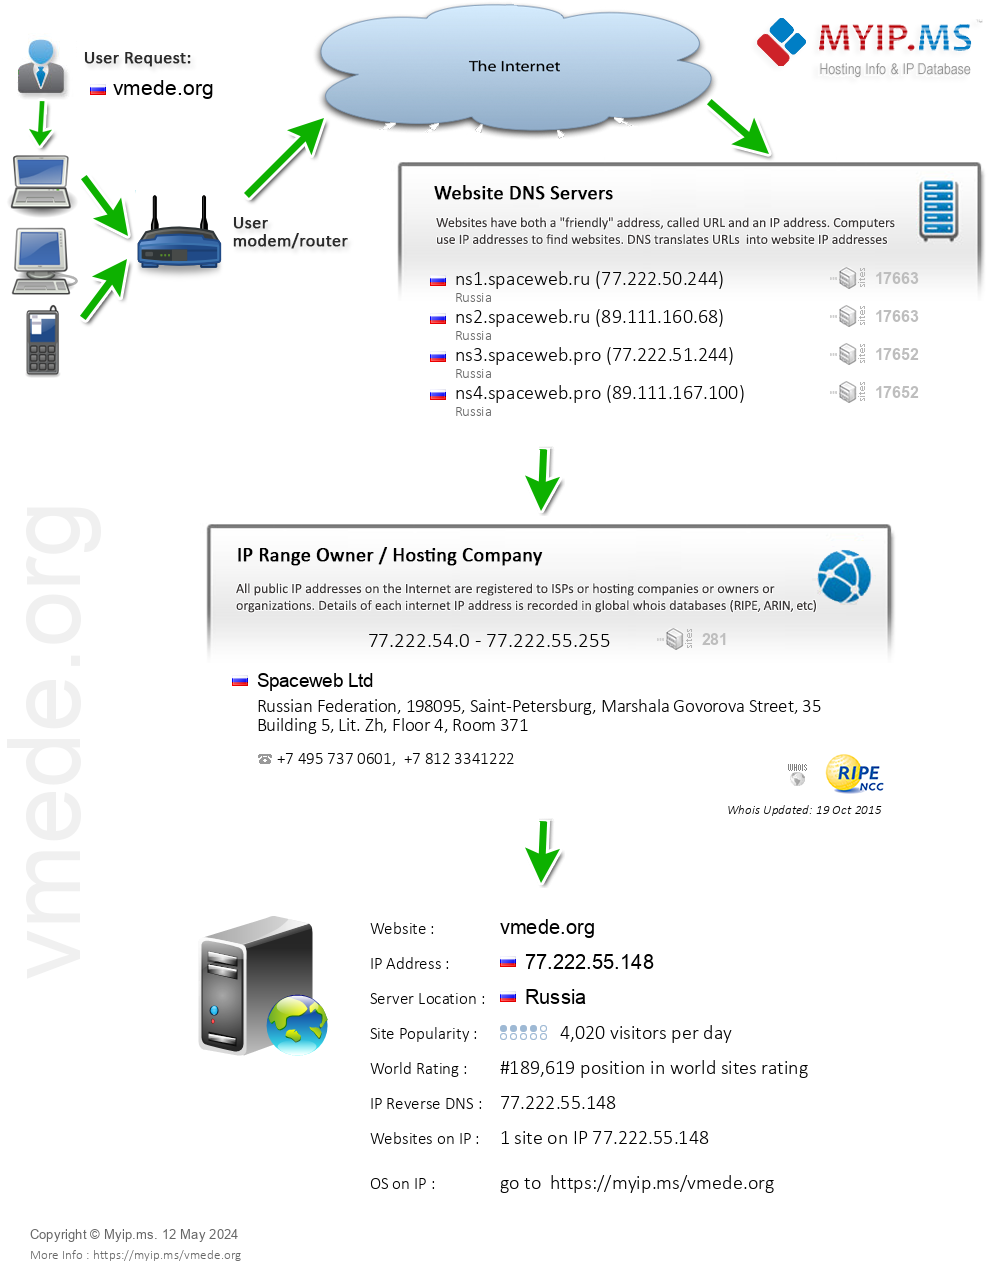 Vmede.org - Website Hosting Visual IP Diagram